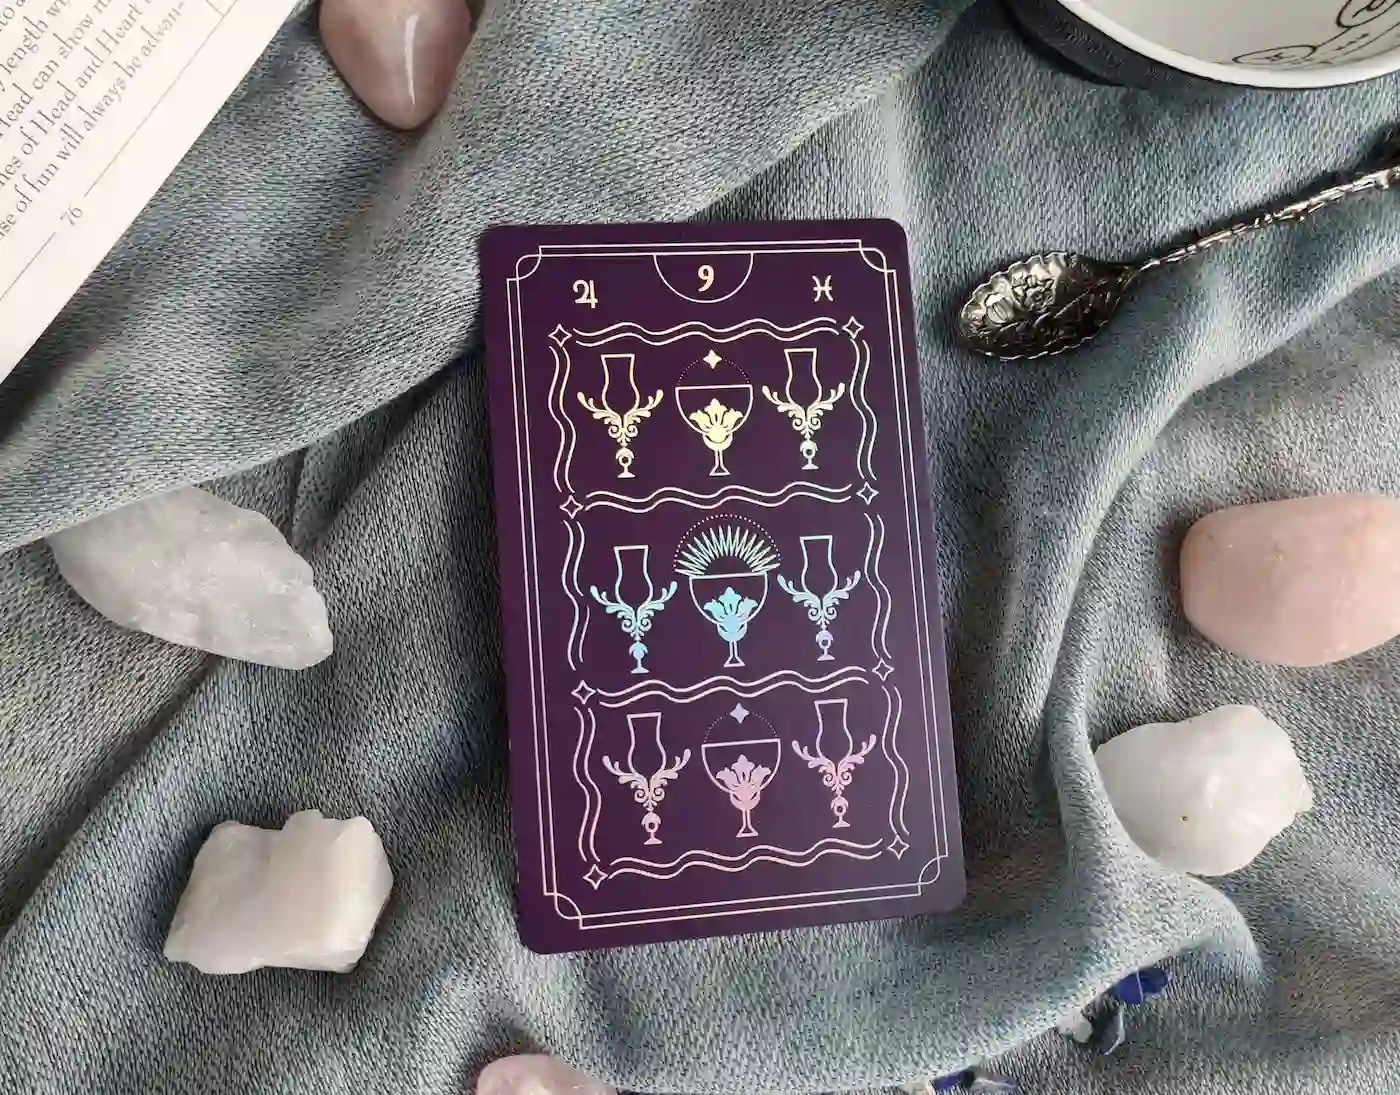 9 of Cups tarot card